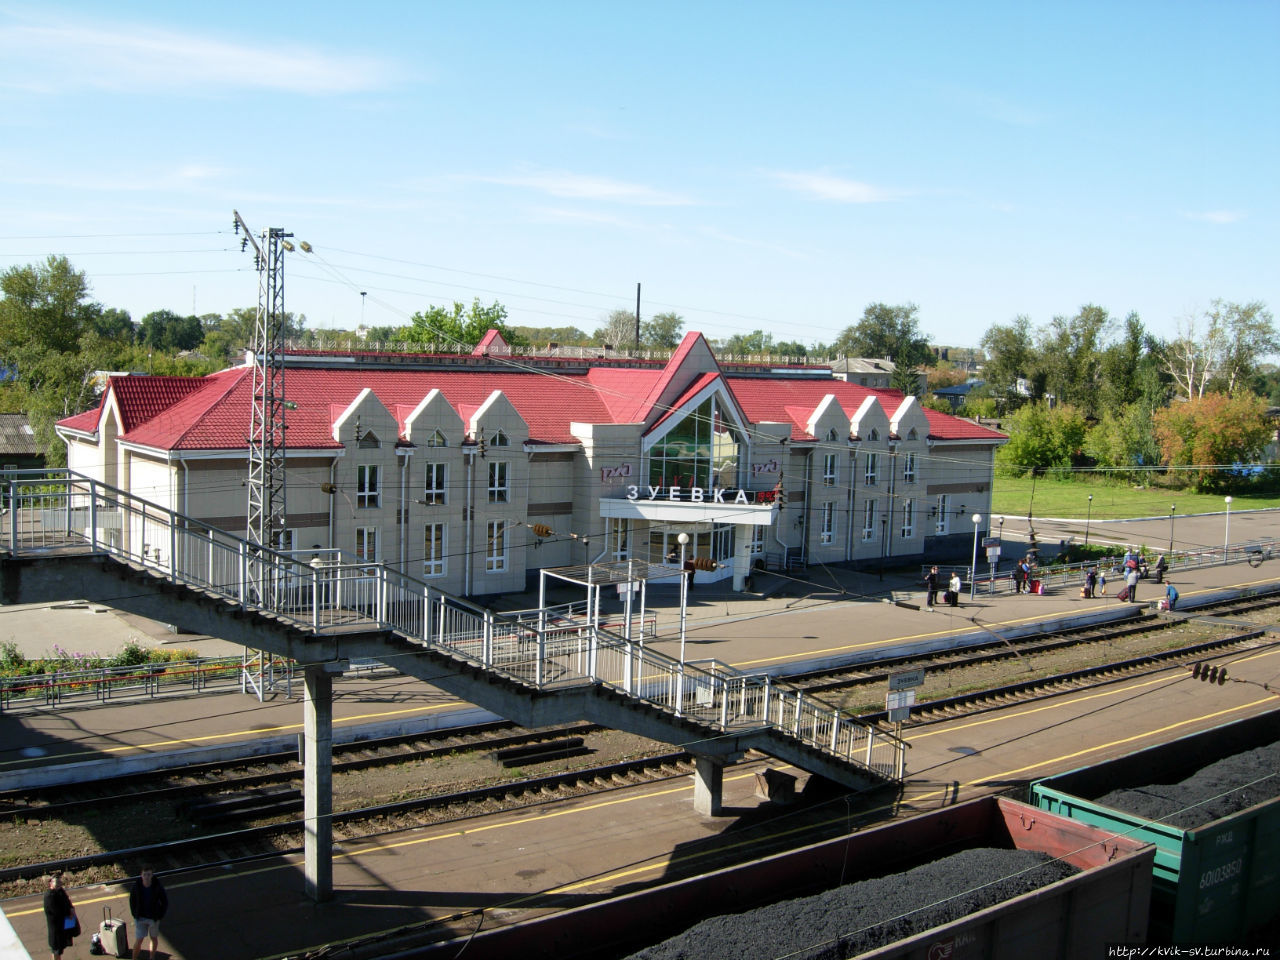 Этот вокзал построен недавно, уже в новое время Зуевка, Россия